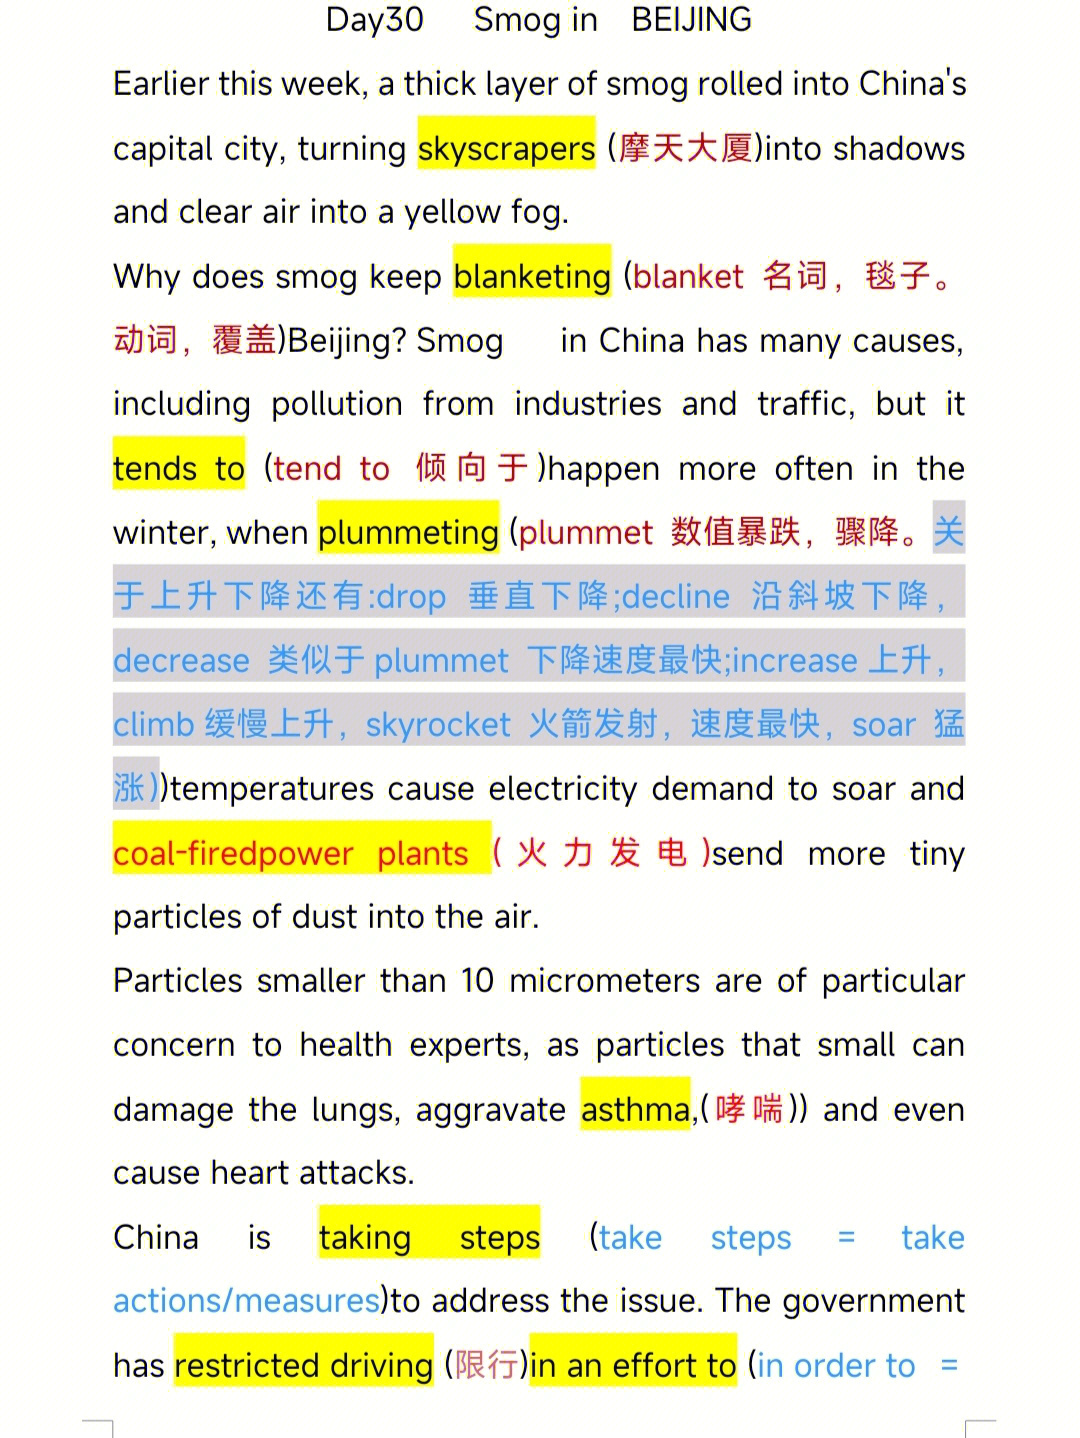 怎么样有没有什么收获嘞那么今天的素材讲述了关于北京雾霾的问题95